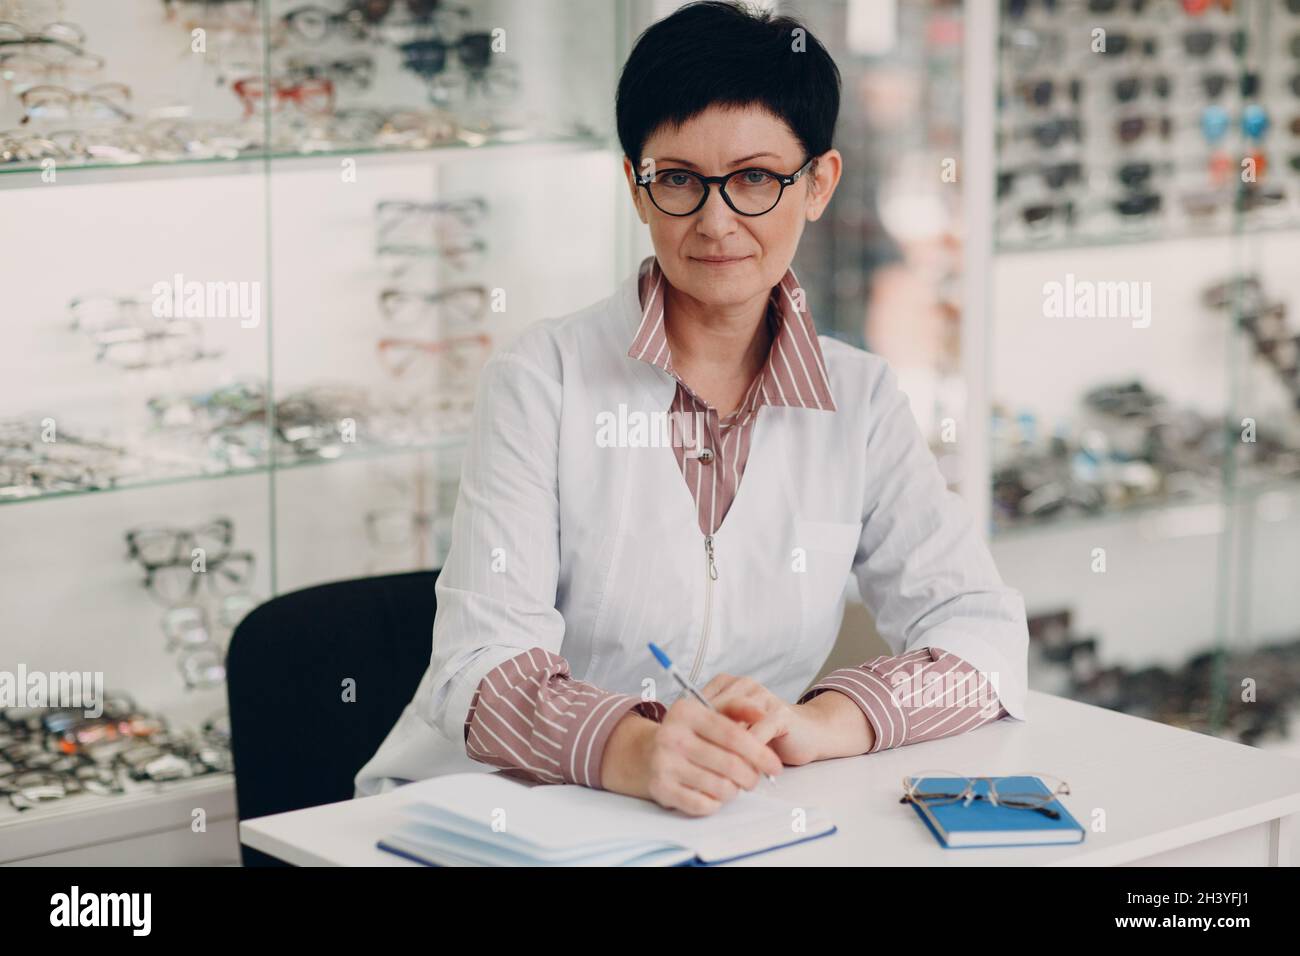 Schöner reifer Optiker, der im Augenoptiker-Salon ein Buch geschrieben hat Stockfoto